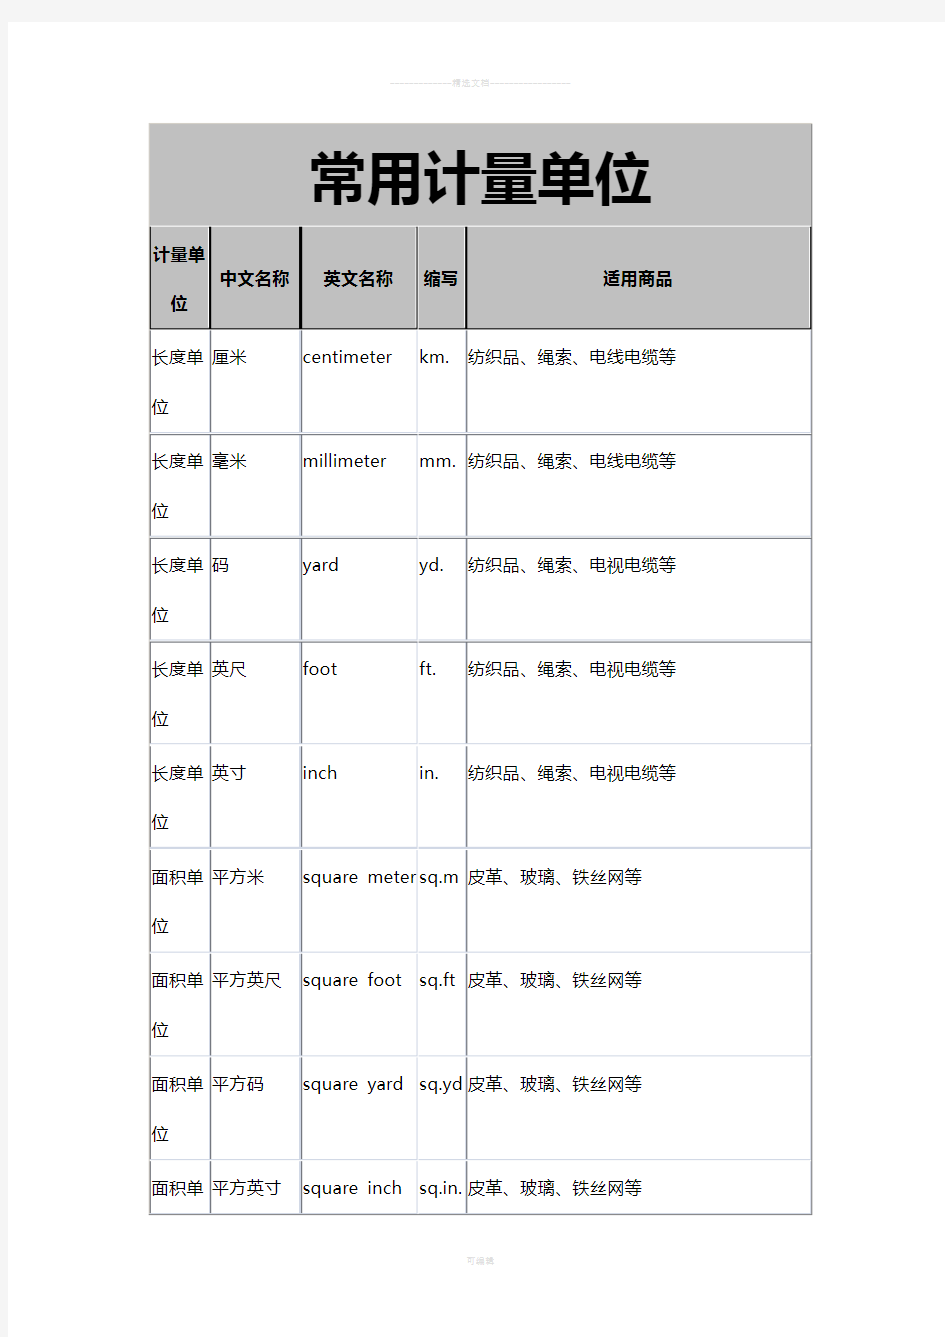 中英文对照常用计量单位名称及缩写